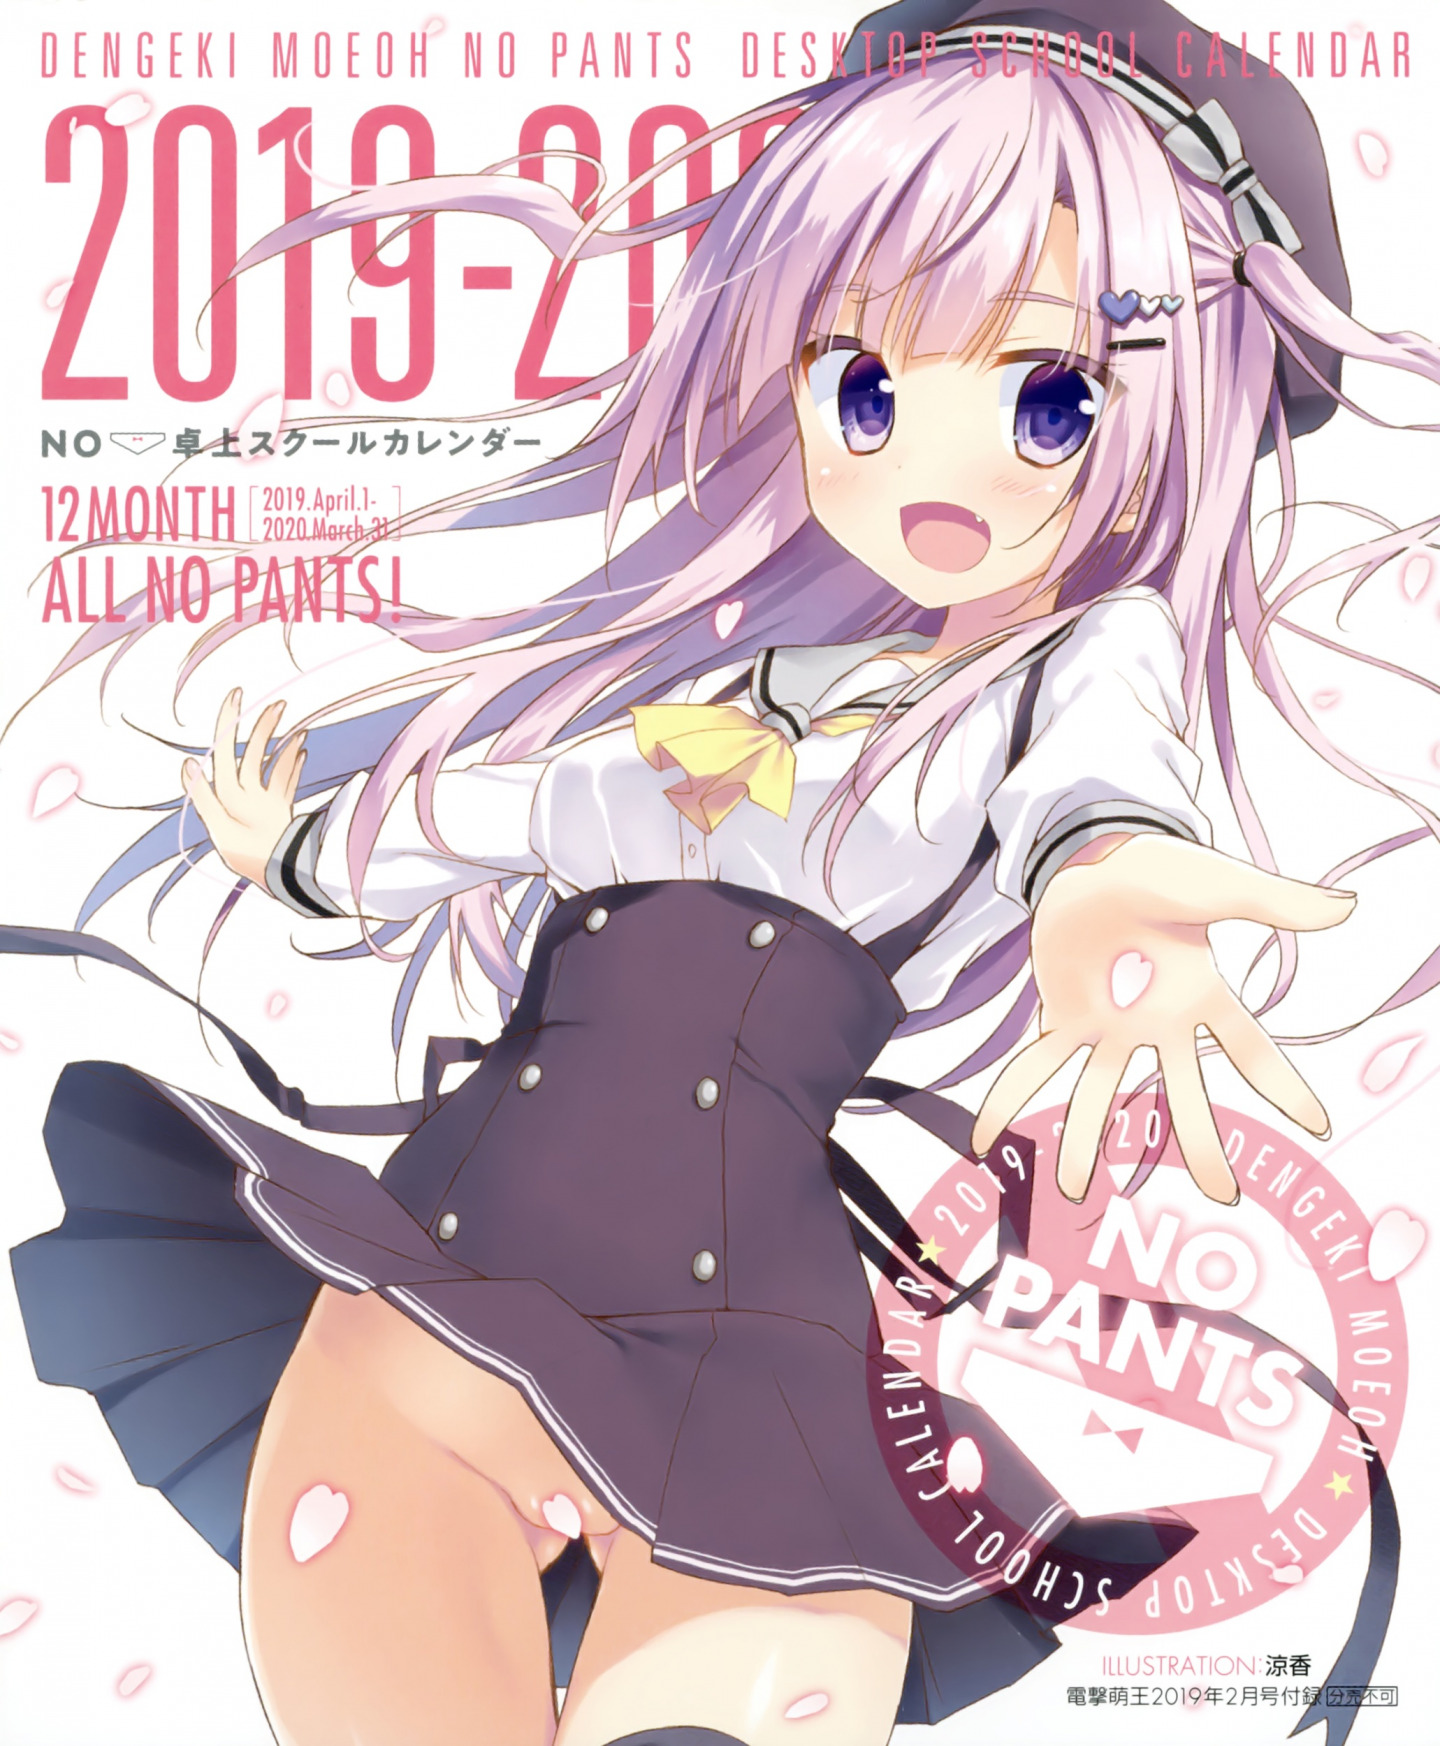 Dengeki Moeoh No Pants Desktop School Calendar 2019-2020 [P1]